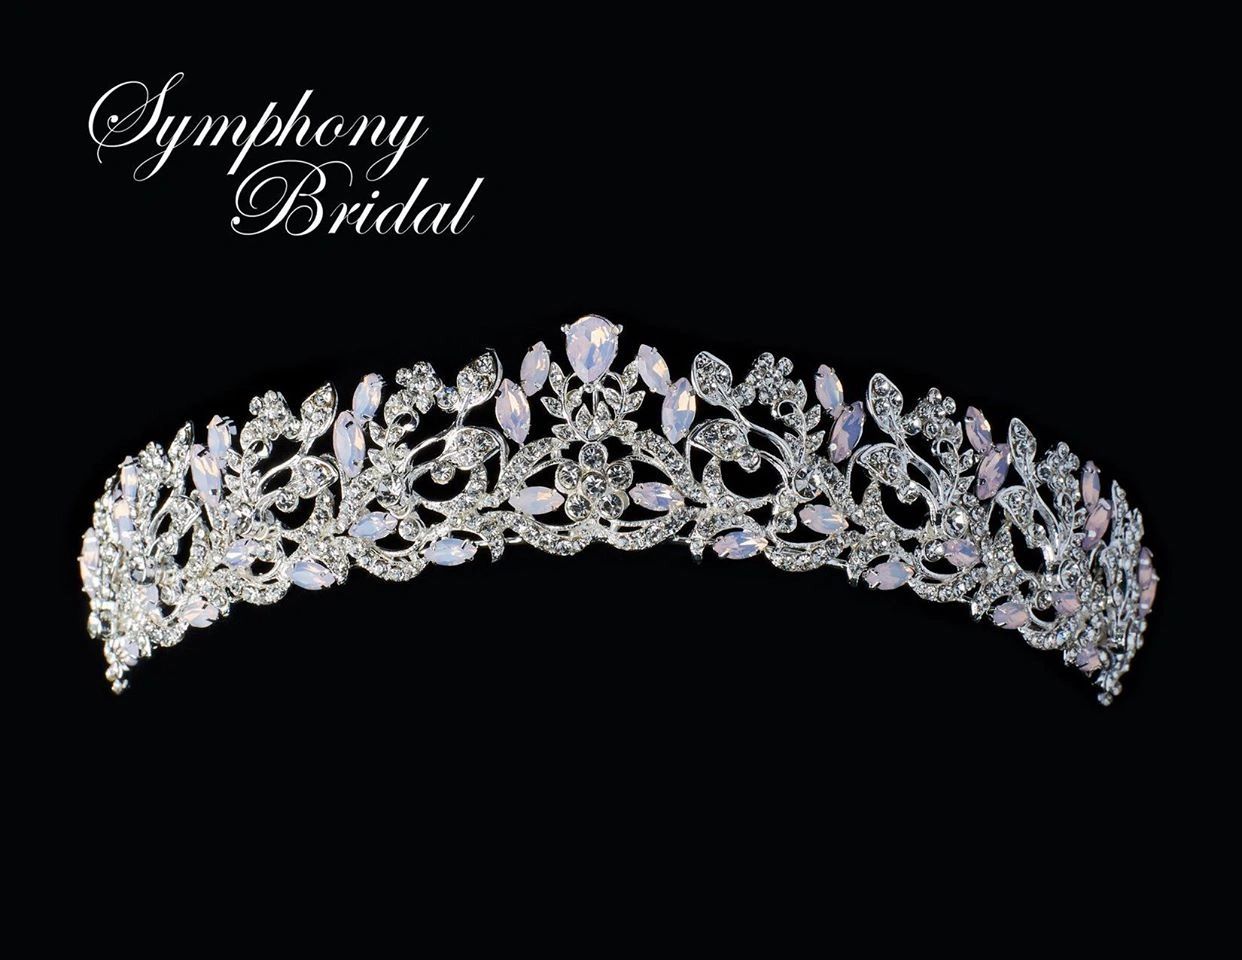 Symphony Bridal
Bridal veils and headpieces